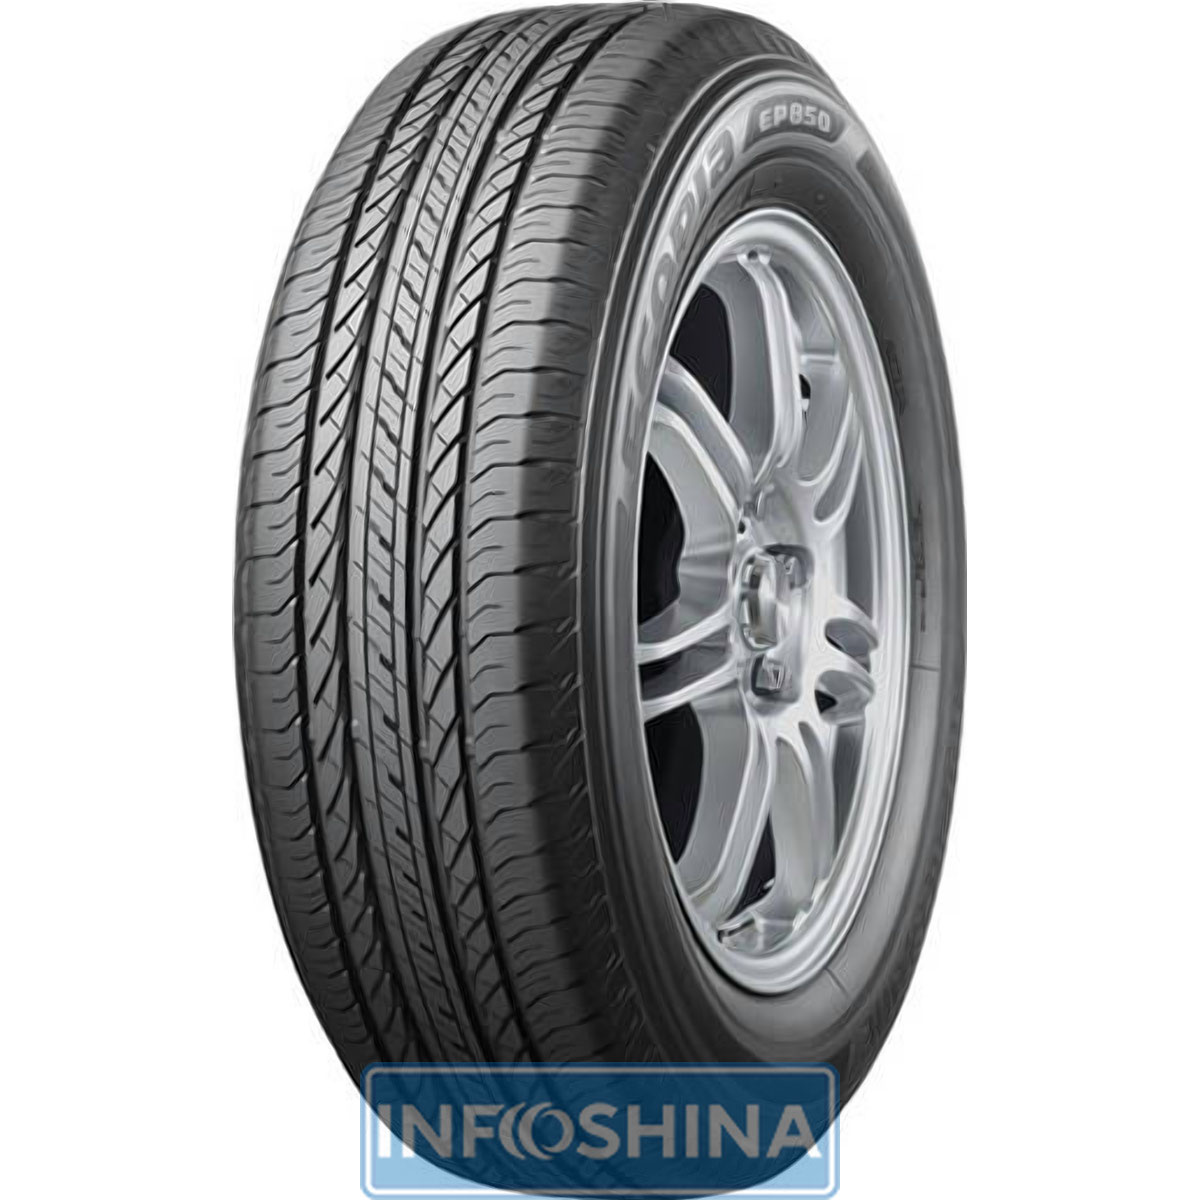 Купить шины Bridgestone Ecopia EP850 245/65 R17 111H